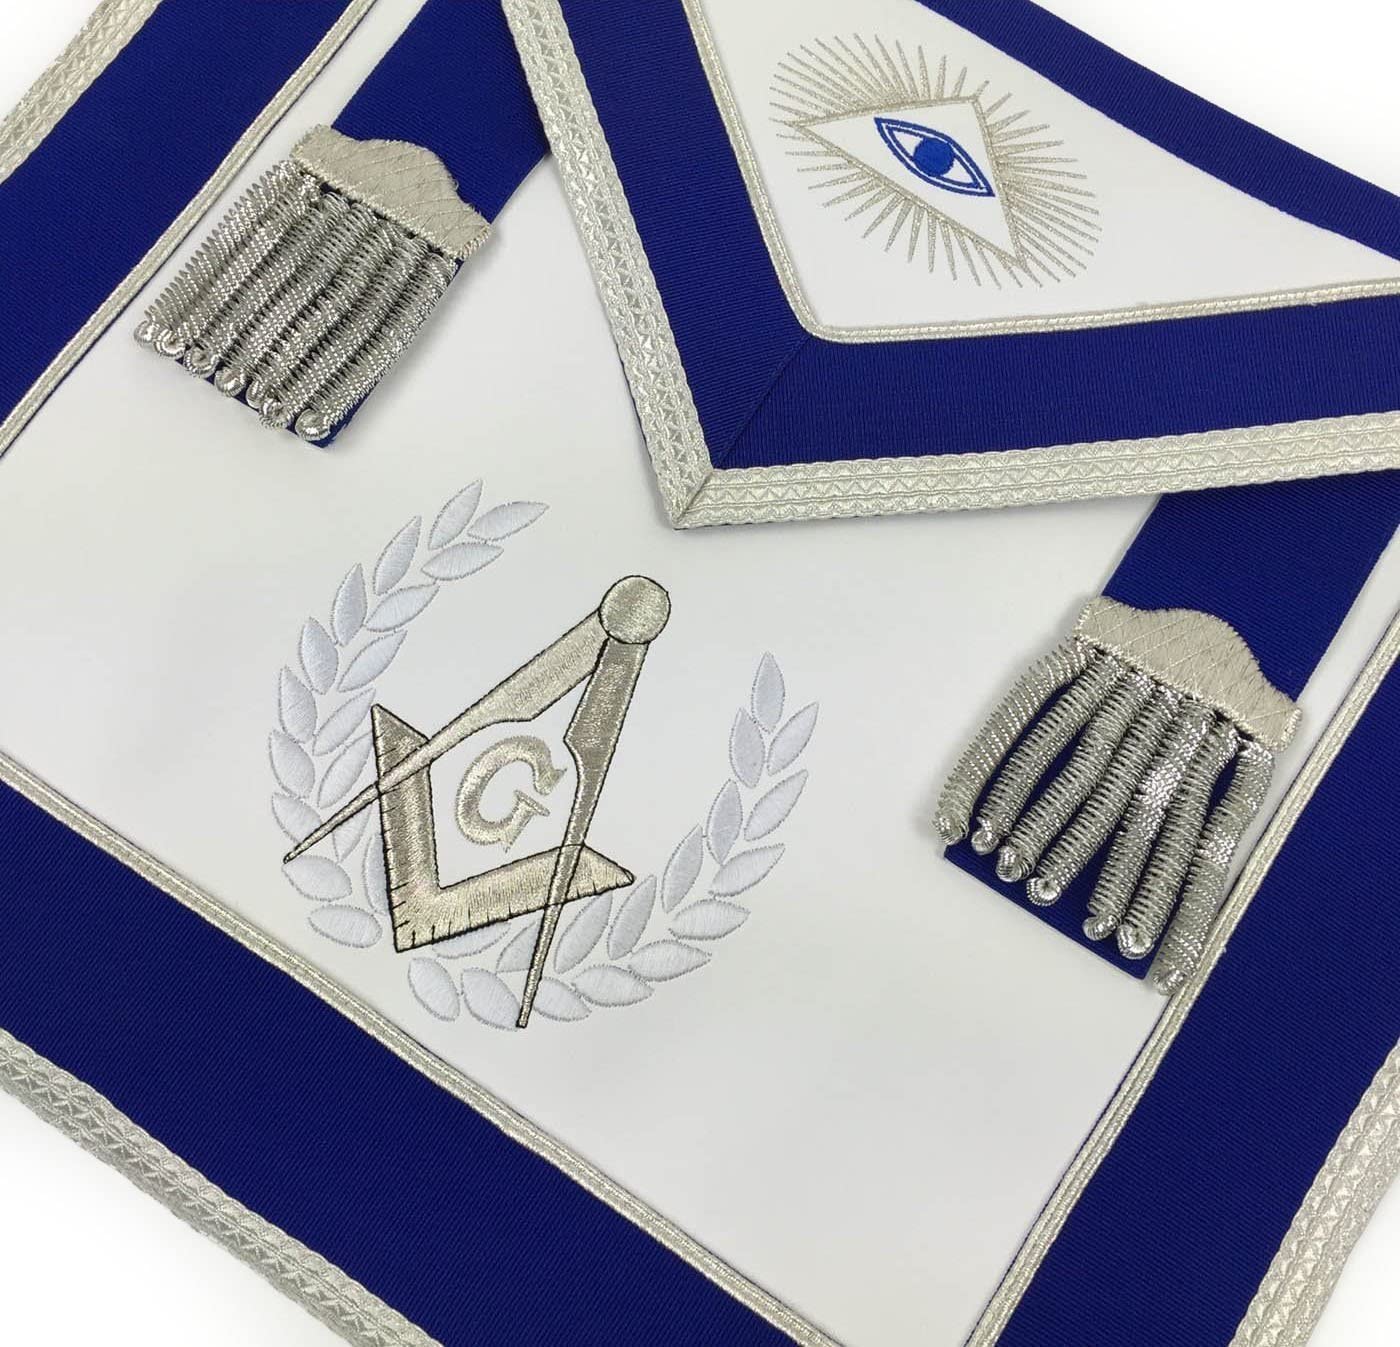 Masonic Blue Lodge Master Mason Apron Set Apron,Collar gauntlets (Cuffs)